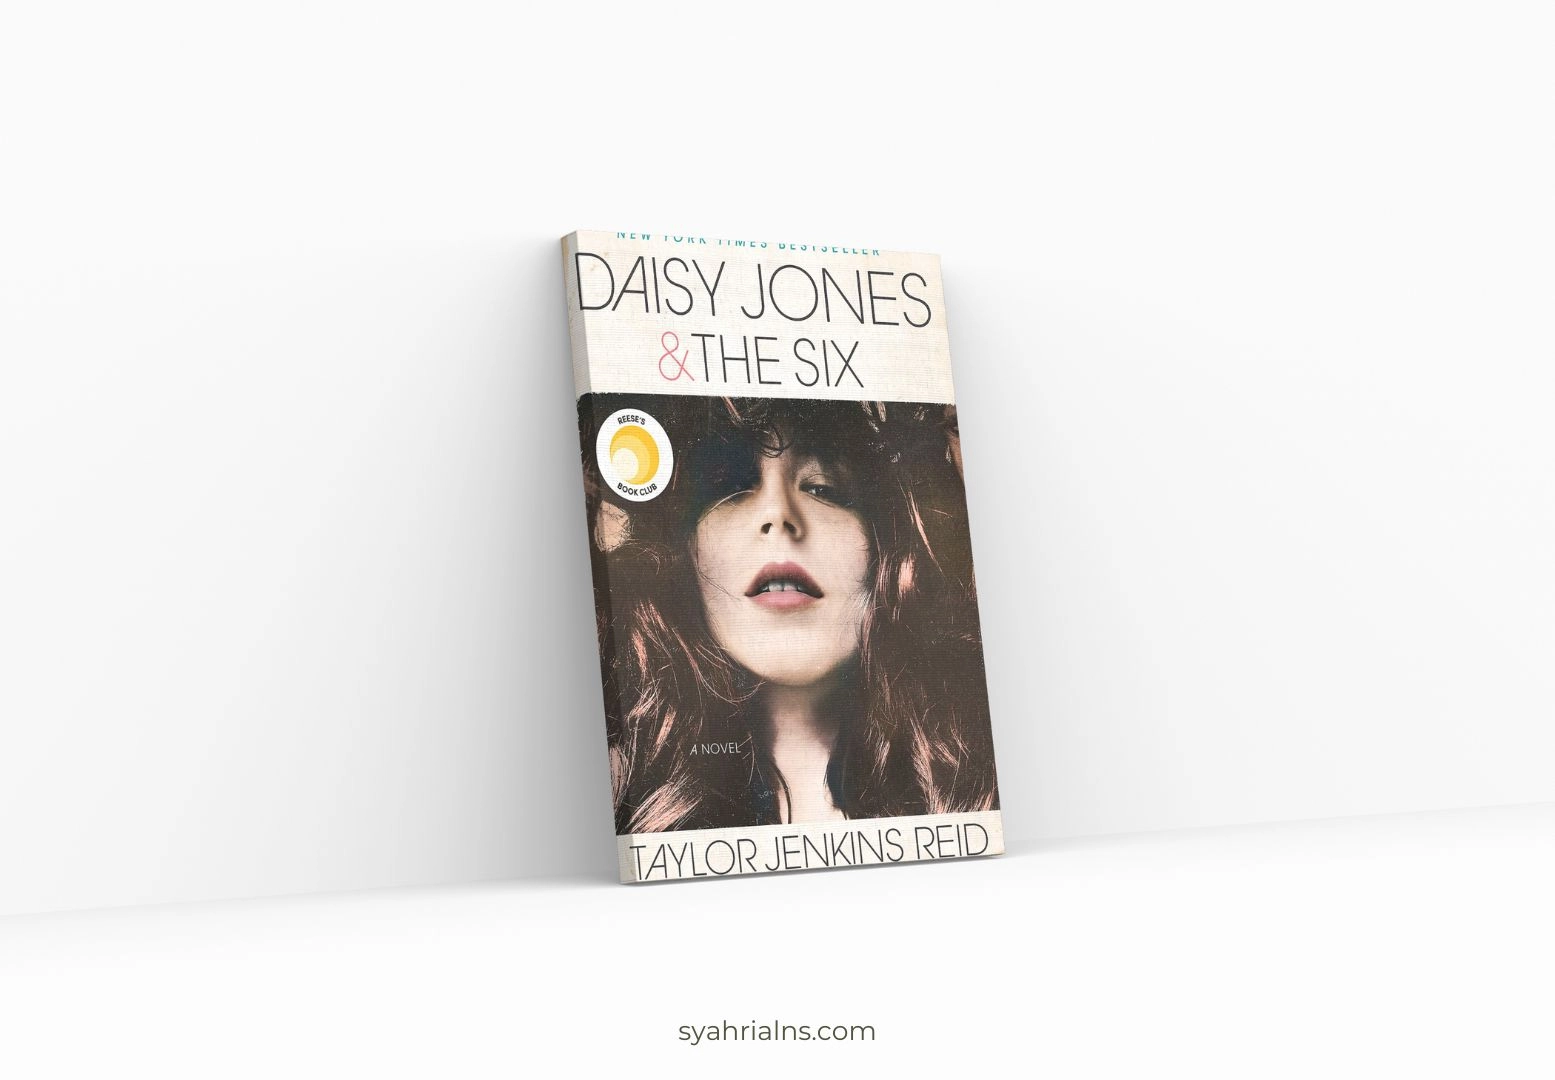 Original graphic of Daisy Jones & the Six reviews